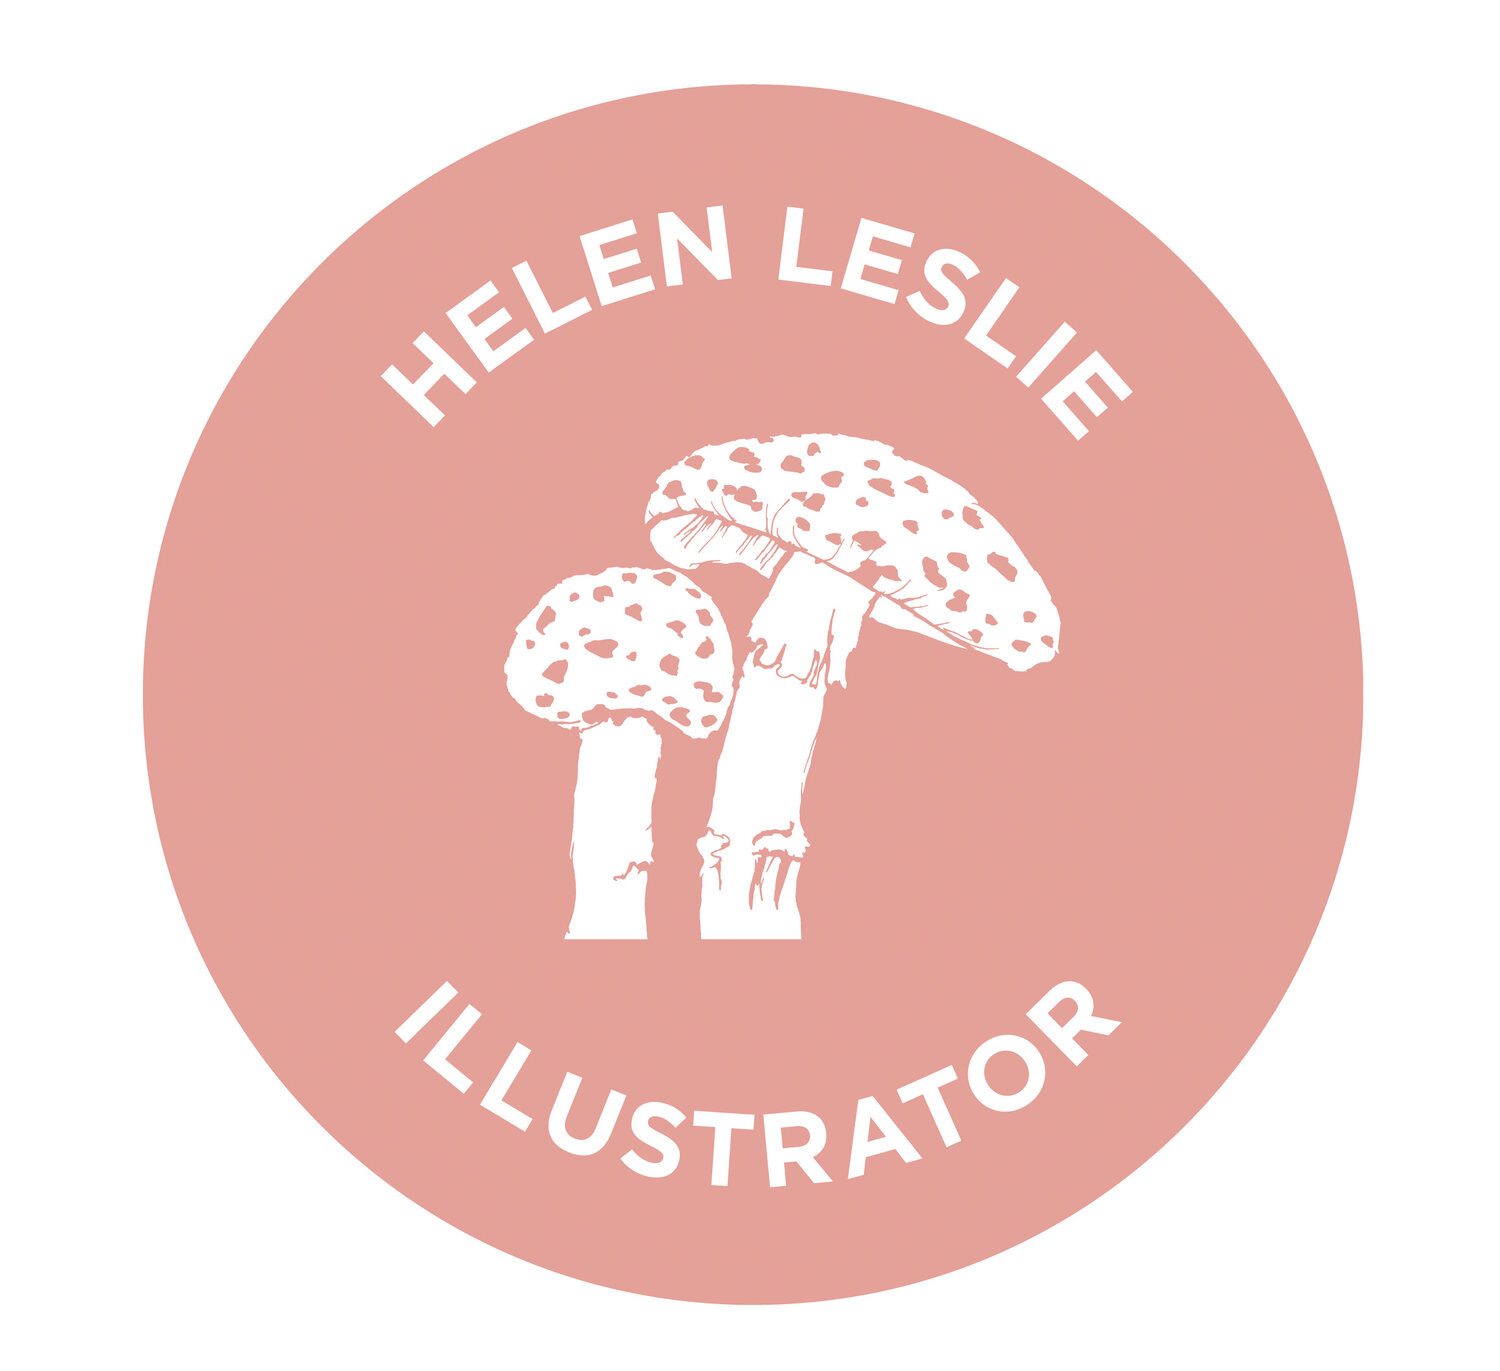 Helen Leslie Illustrator